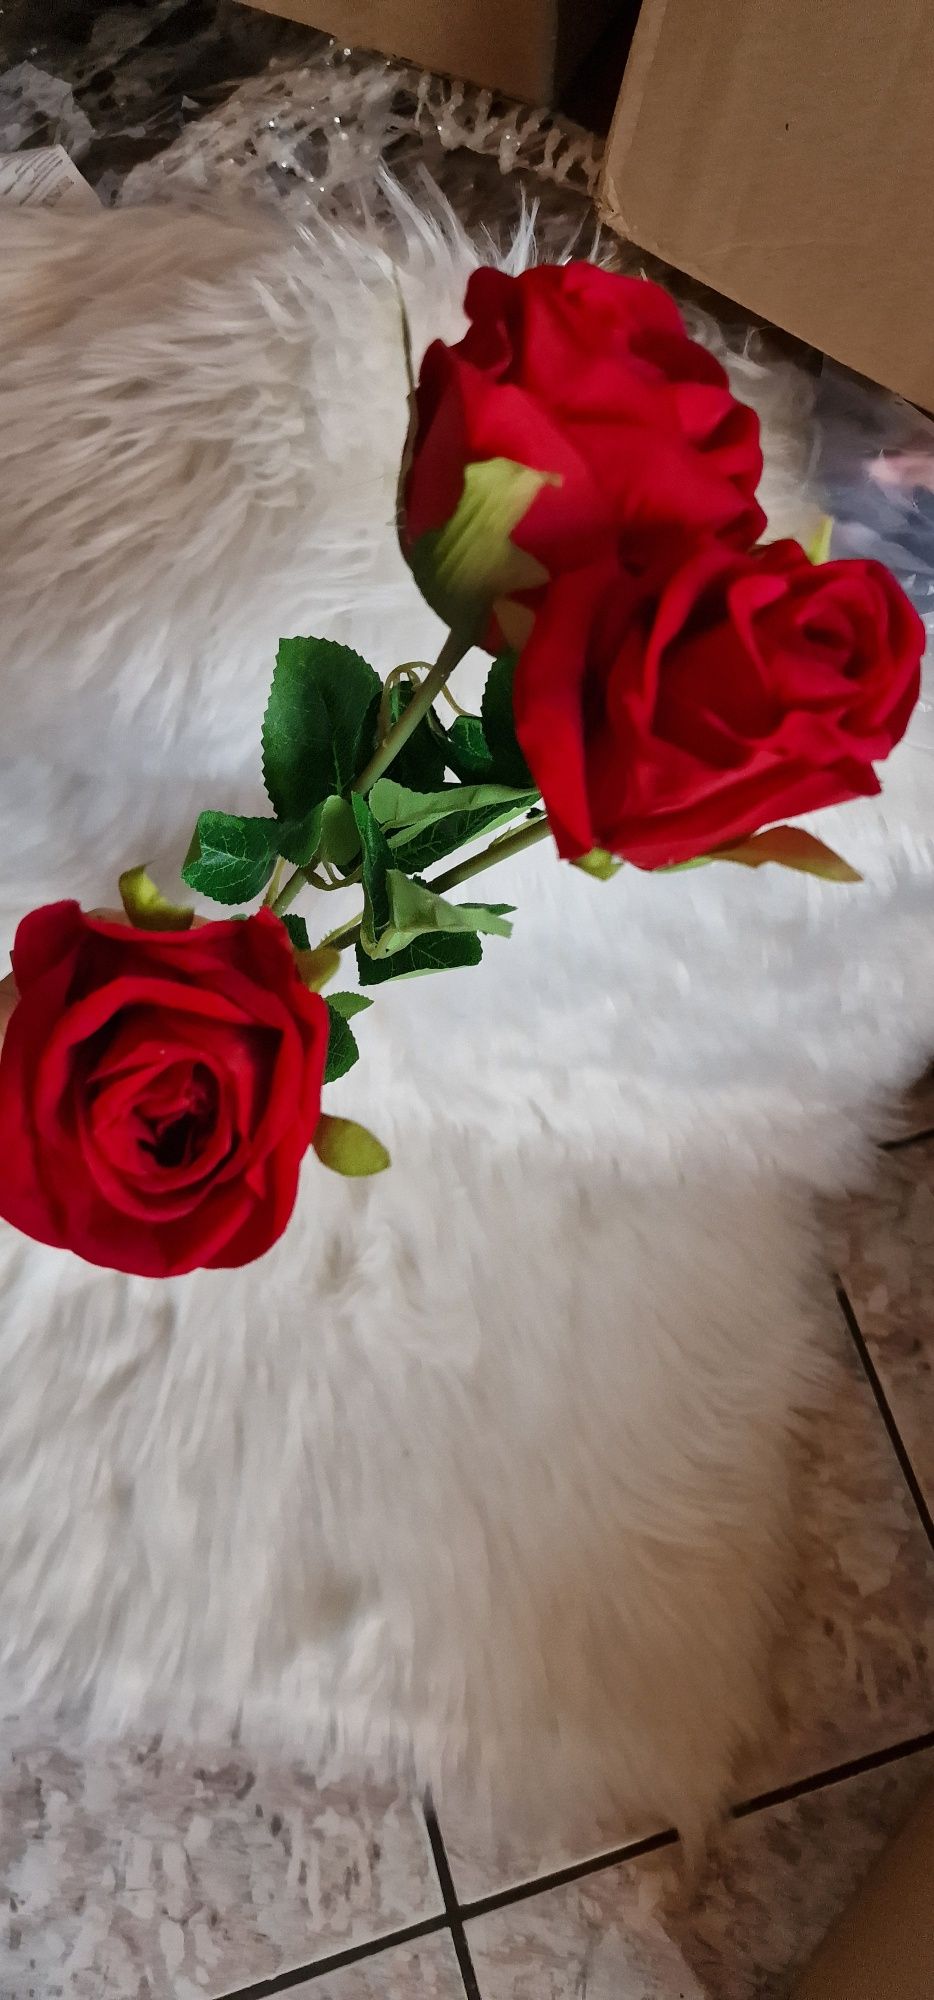 Przepiękna czerwono-bordowa welurowa róża - 3 sztuka 62 cm
Cena dotycz